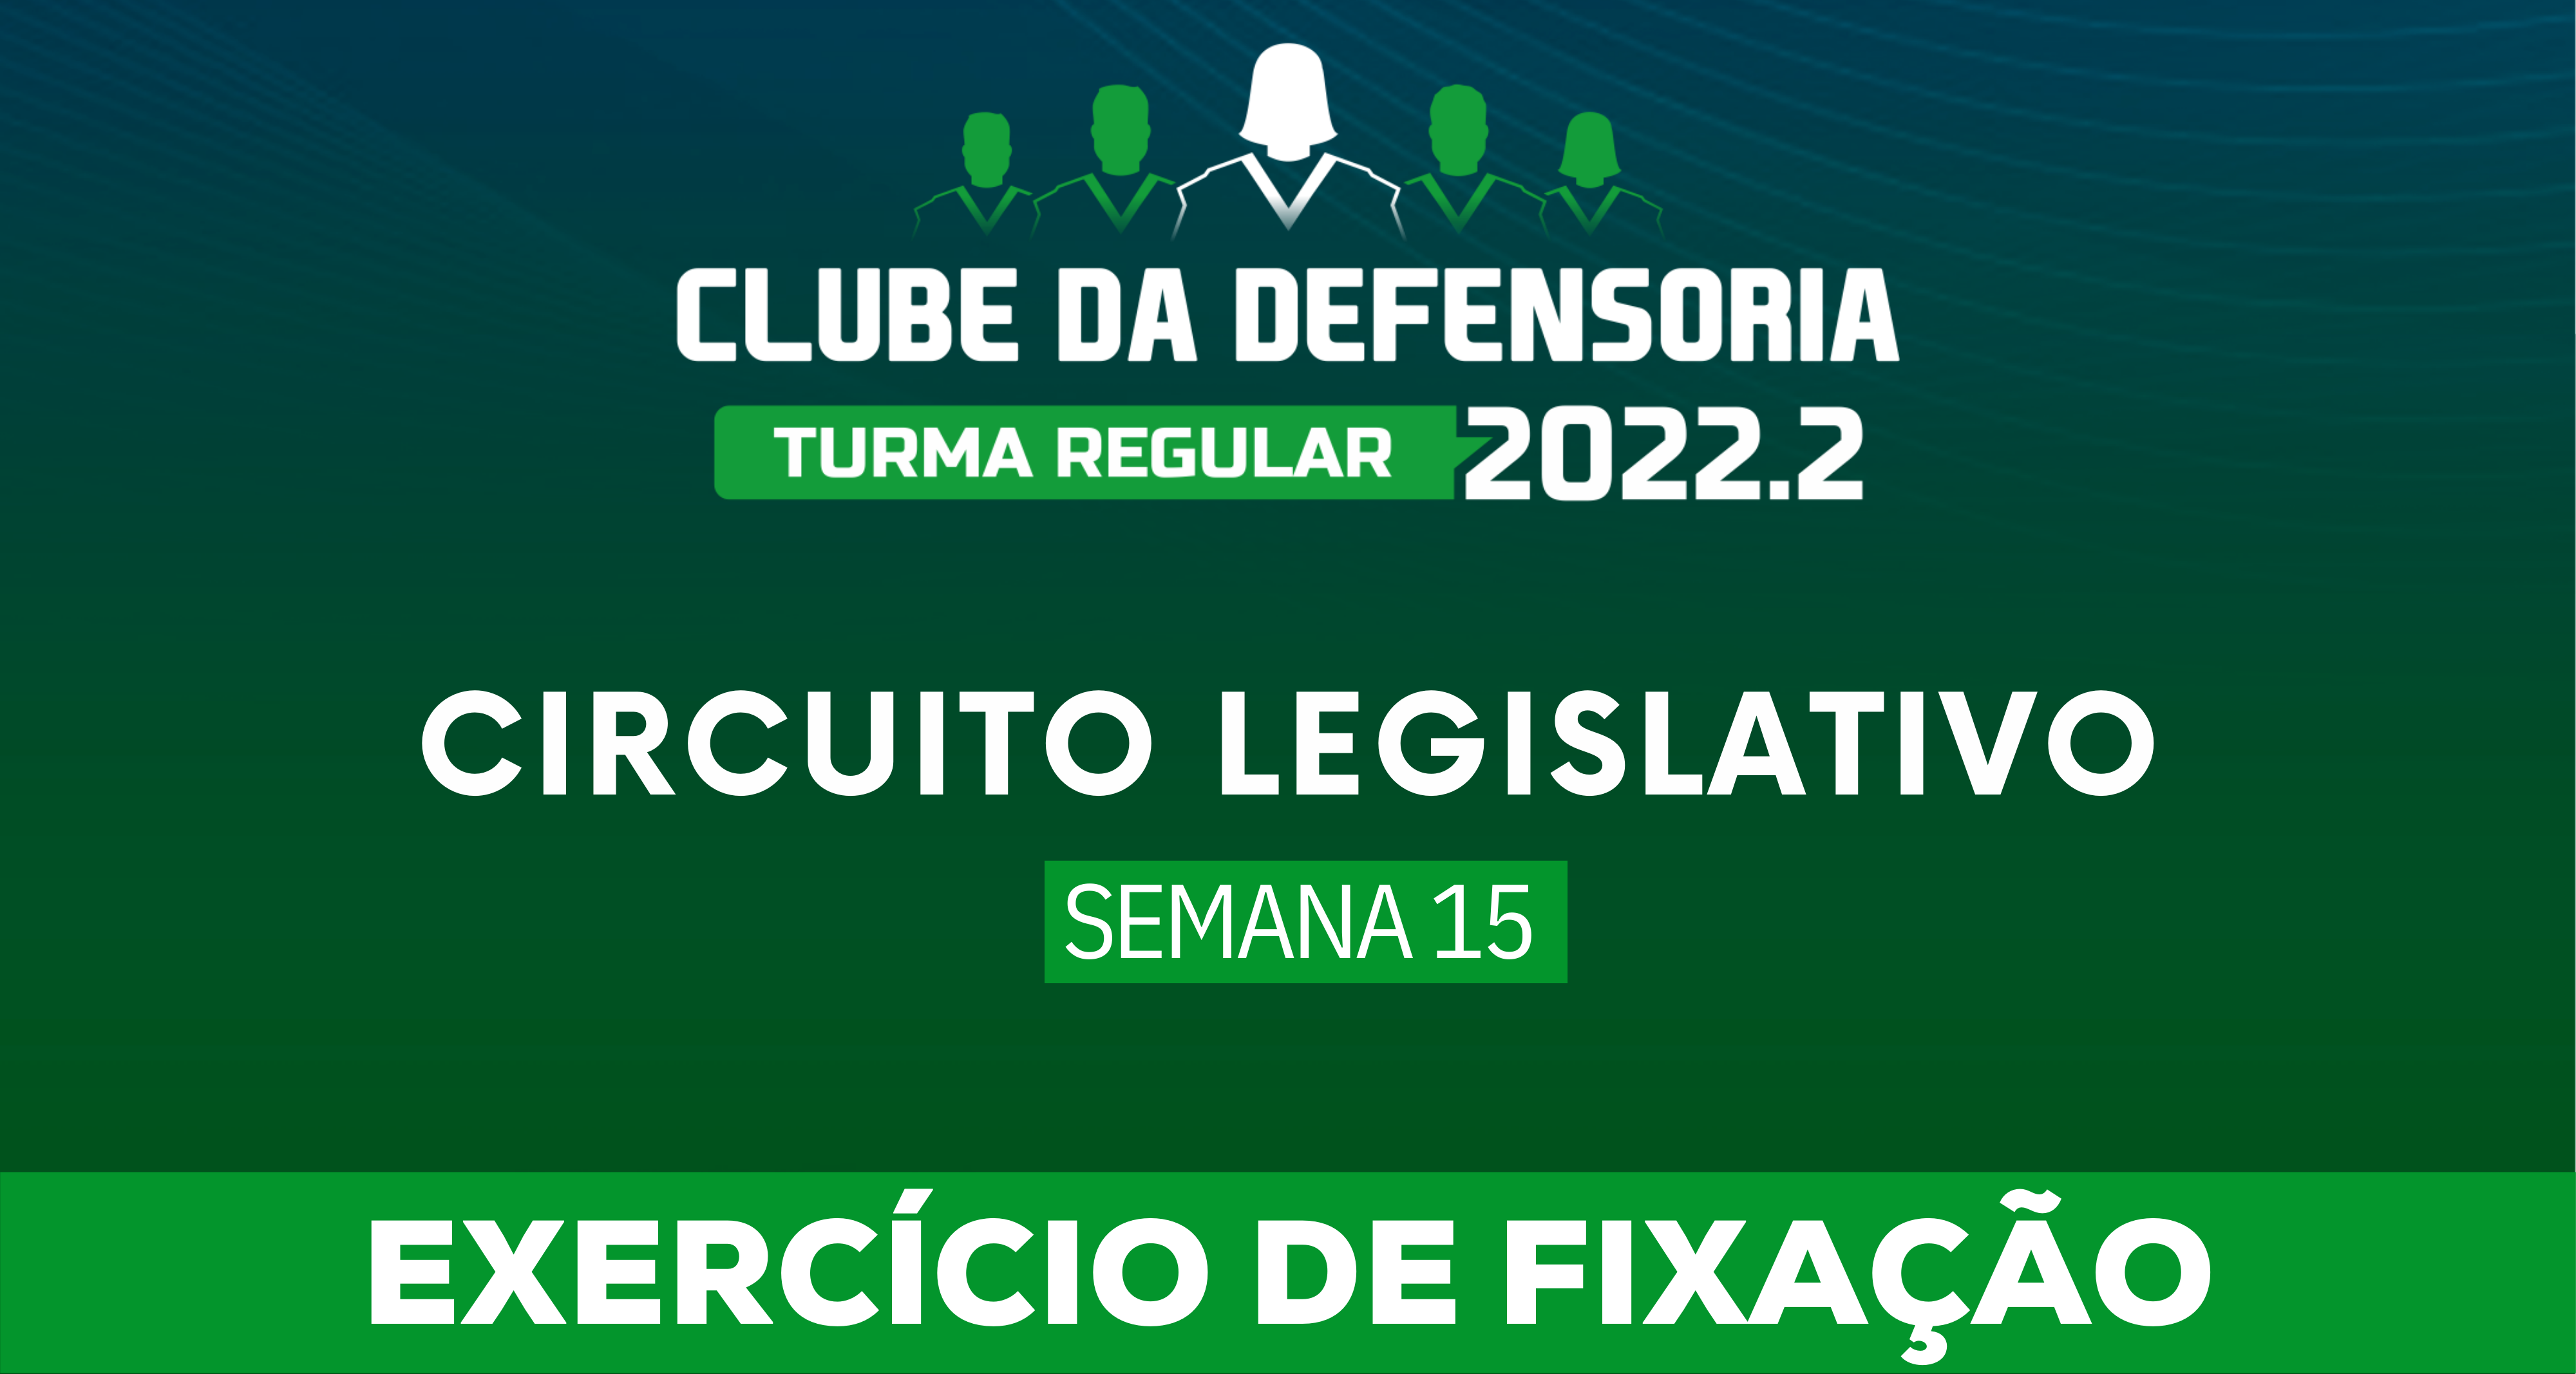 Circuito Legislativo 2022.2 (Clube da Defensoria - Semana 15)